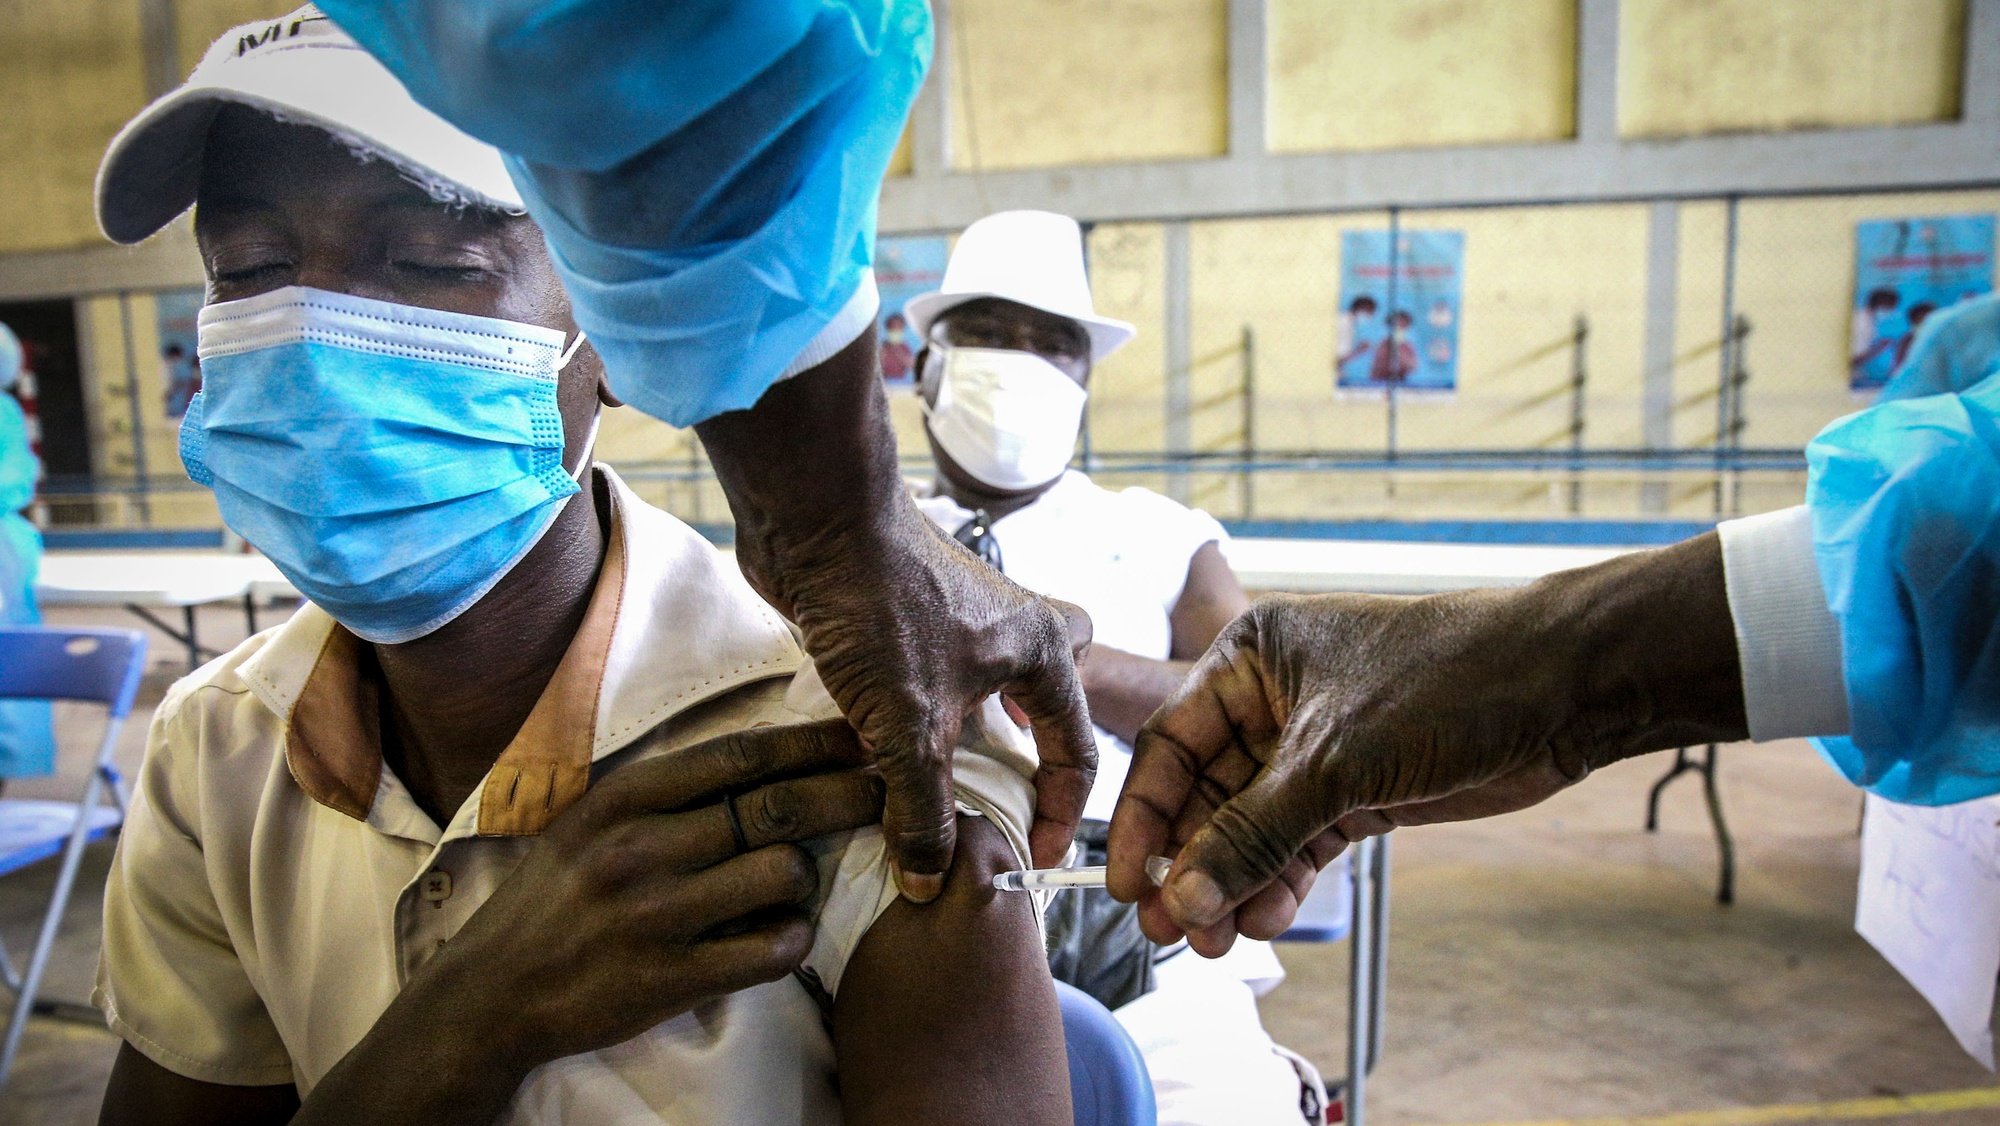 Um jovem é vacinado contra a covid-19 no Posto de Vacinação da Cidadela Desportiva, em Luanda, Angola, 17 de dezembro de 2021. Segundo a ministra da Saúde angolana, Sílvia Lutucuta, crianças e adolescentes entre os 12 e 17 anos vão começar a ser vacinados, salientando que há vacinas suficientes para a vacinação da população alvo, de 15,7 milhões. AMPE ROGÉRIO/LUSA